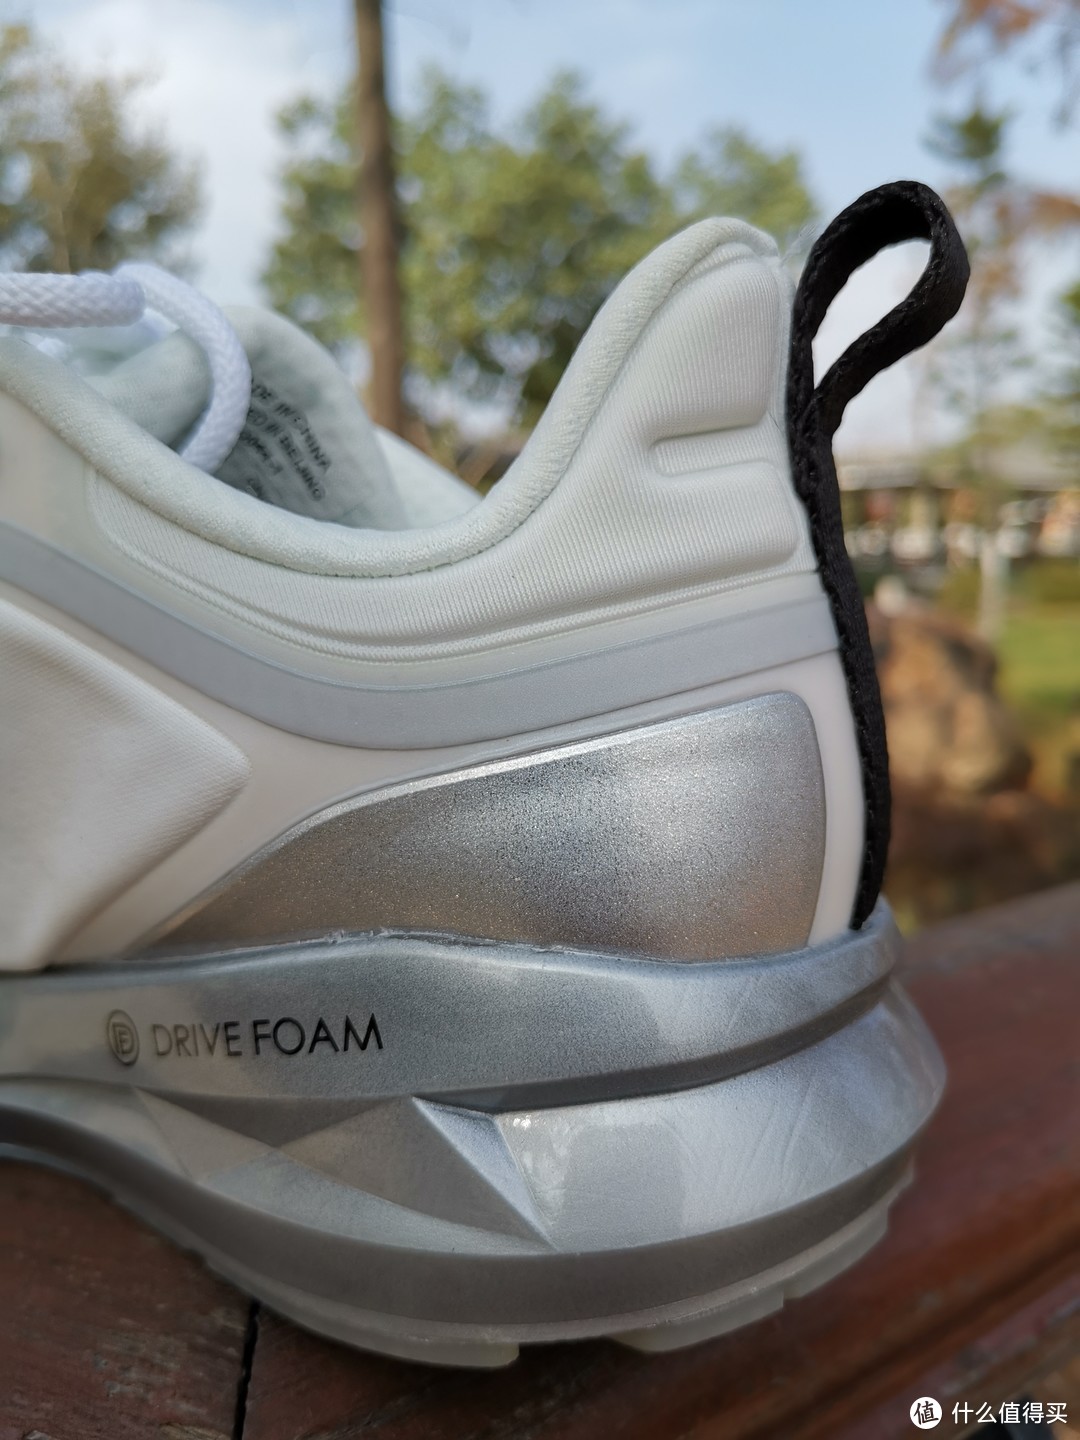 本款跑鞋最大的设计亮点来自中底所用的技术——全掌DRIVE FOAM.